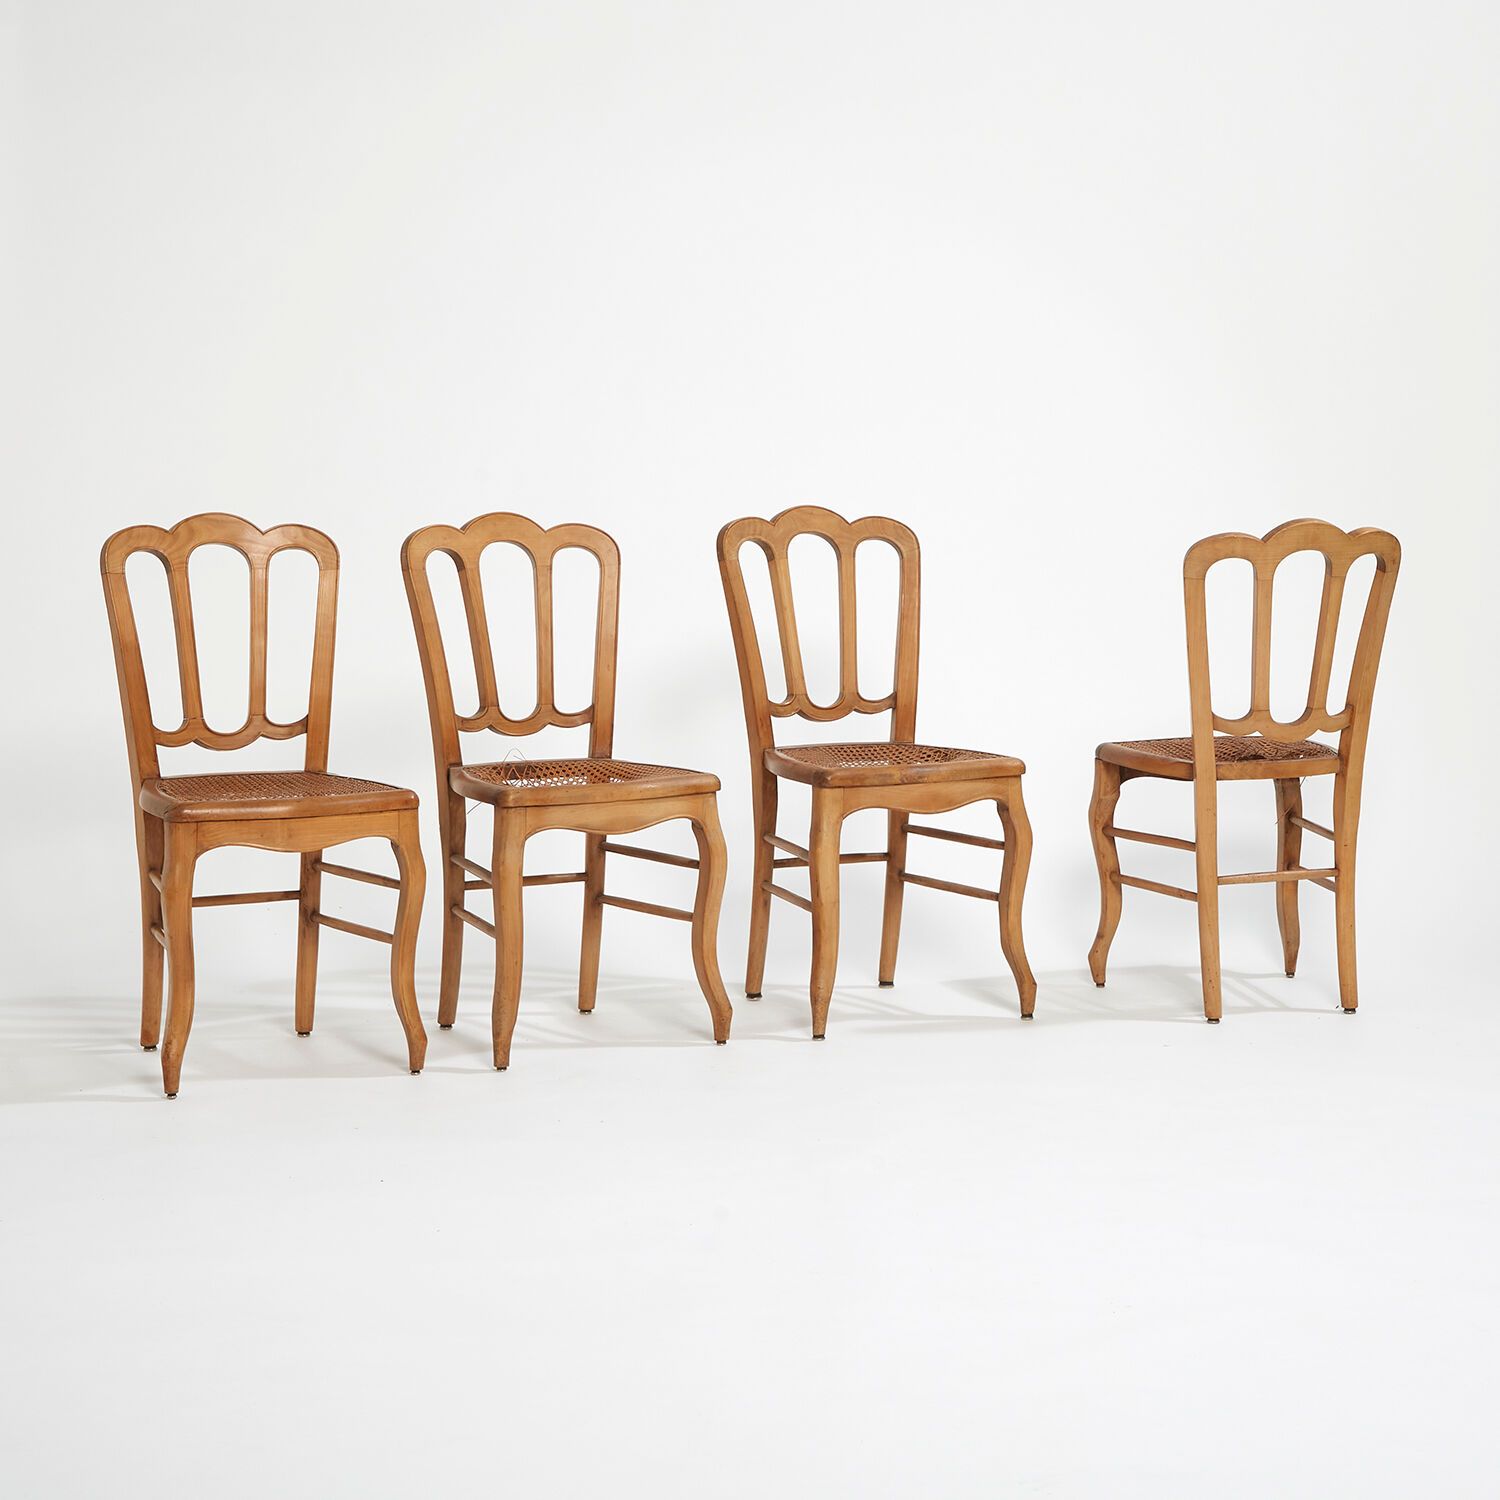 XX SIÈCLE XX. JAHRHUNDERT
Suite von 6 Stühlen aus Eschenholz, Sitzflächen aus Ro&hellip;